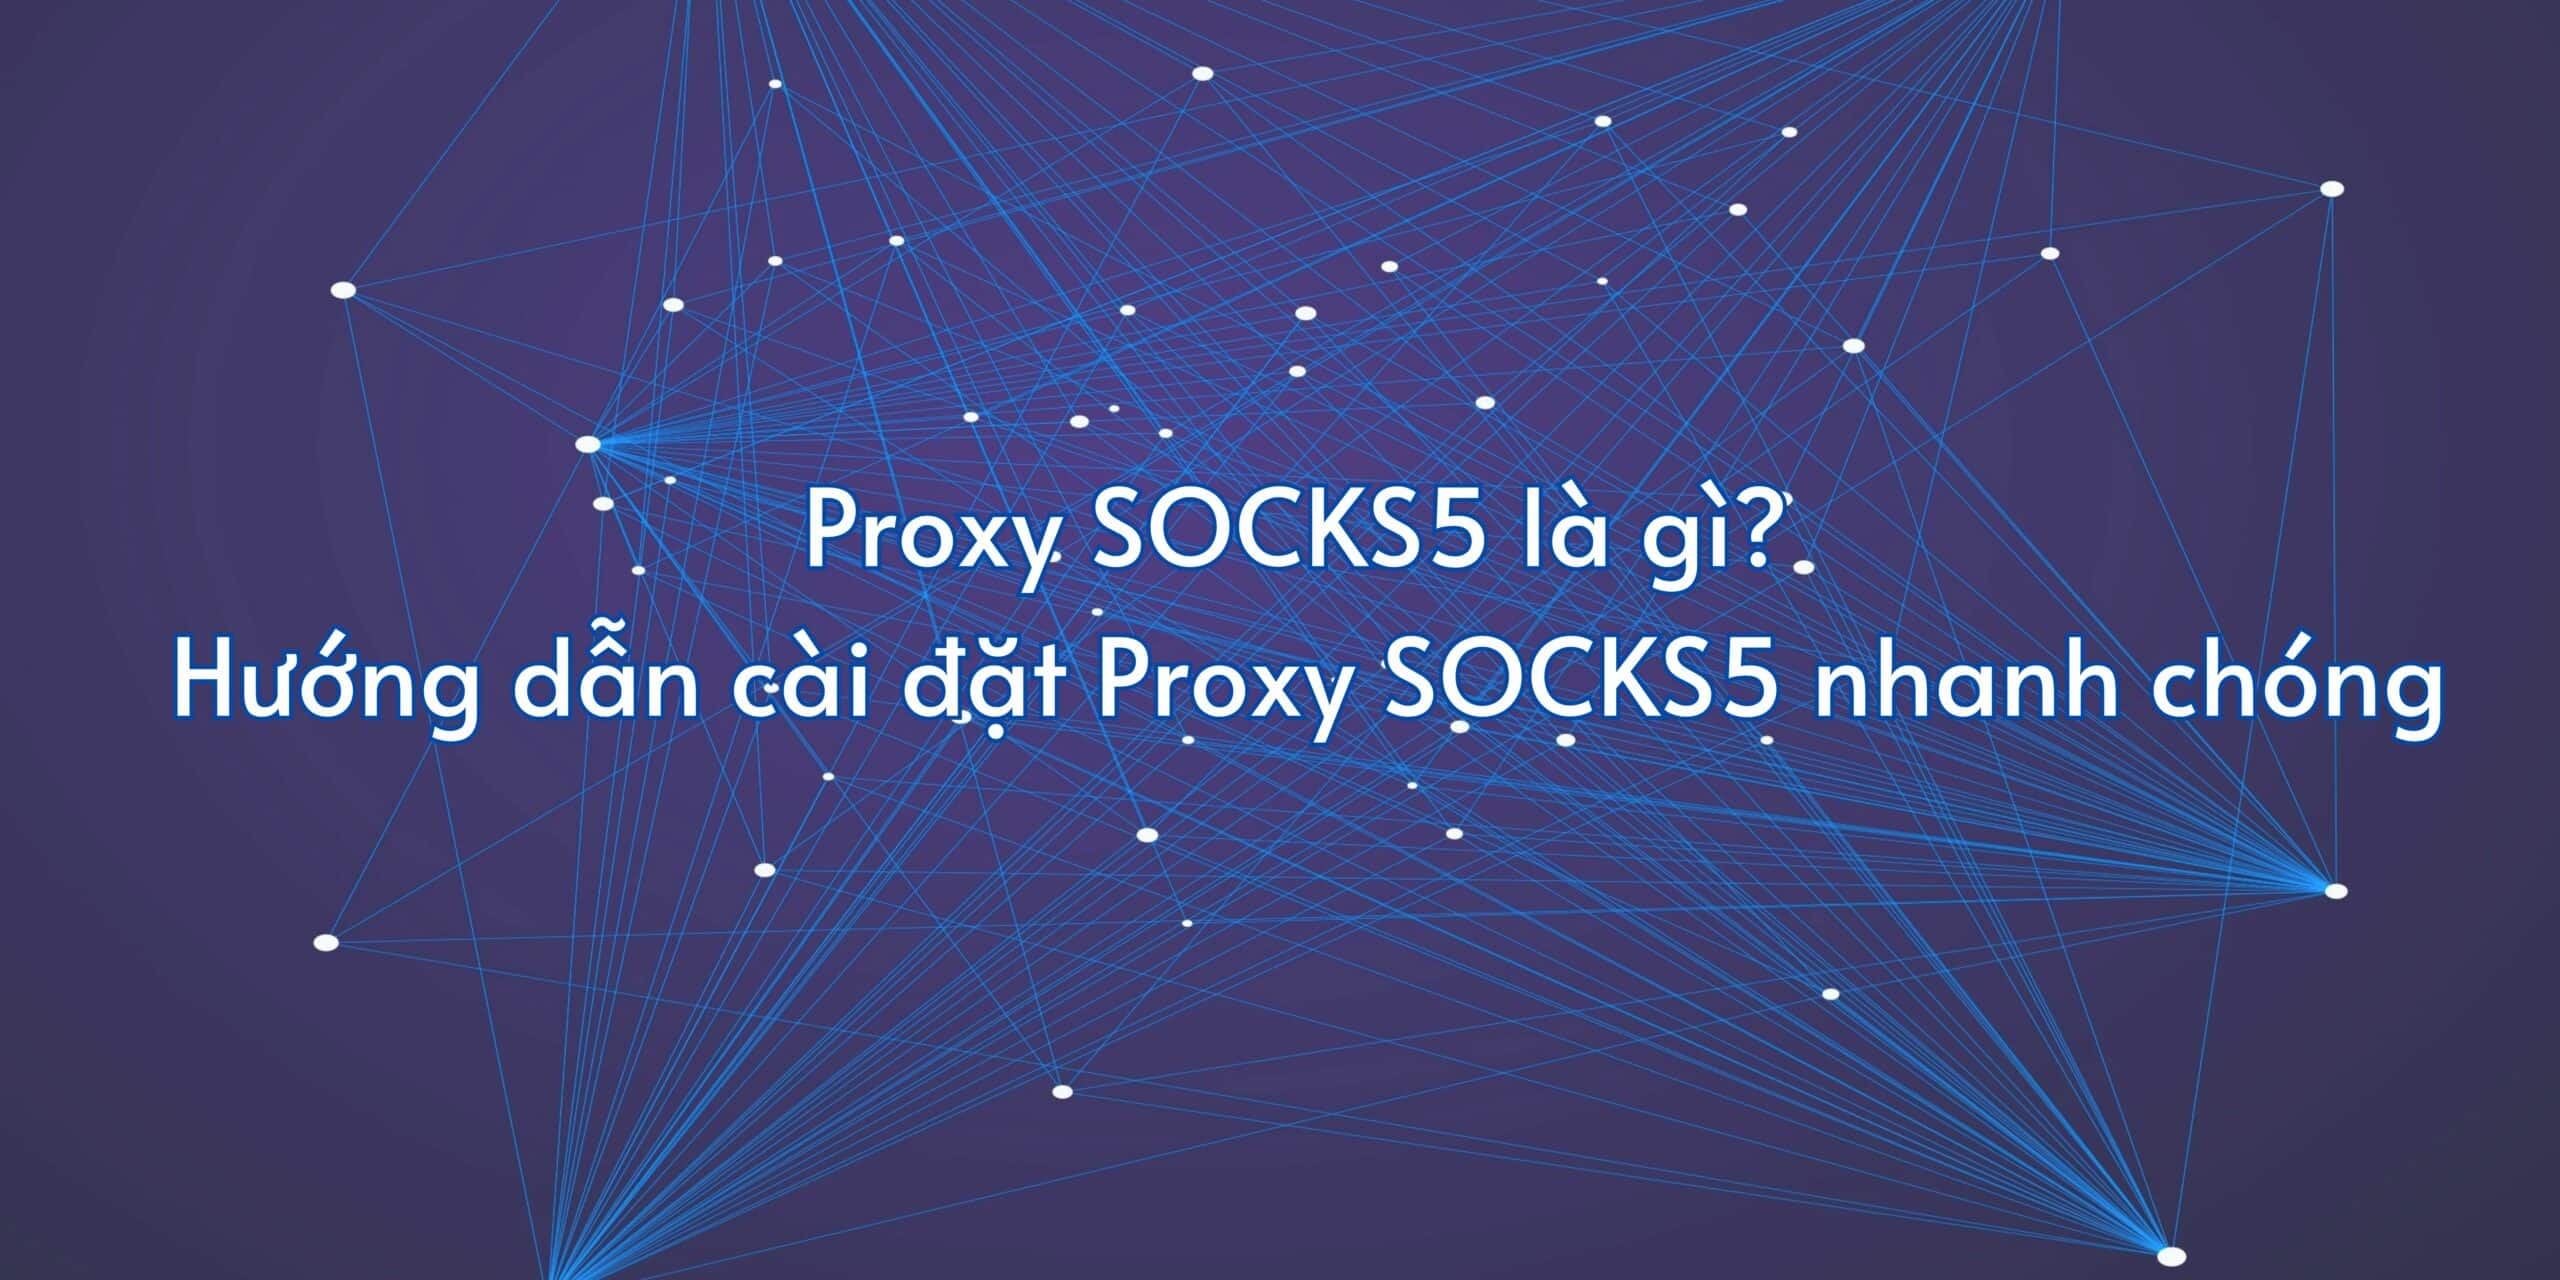 Proxy SOCKS5 là gì? Hướng dẫn cài đặt Proxy SOCKS5 nhanh chóng